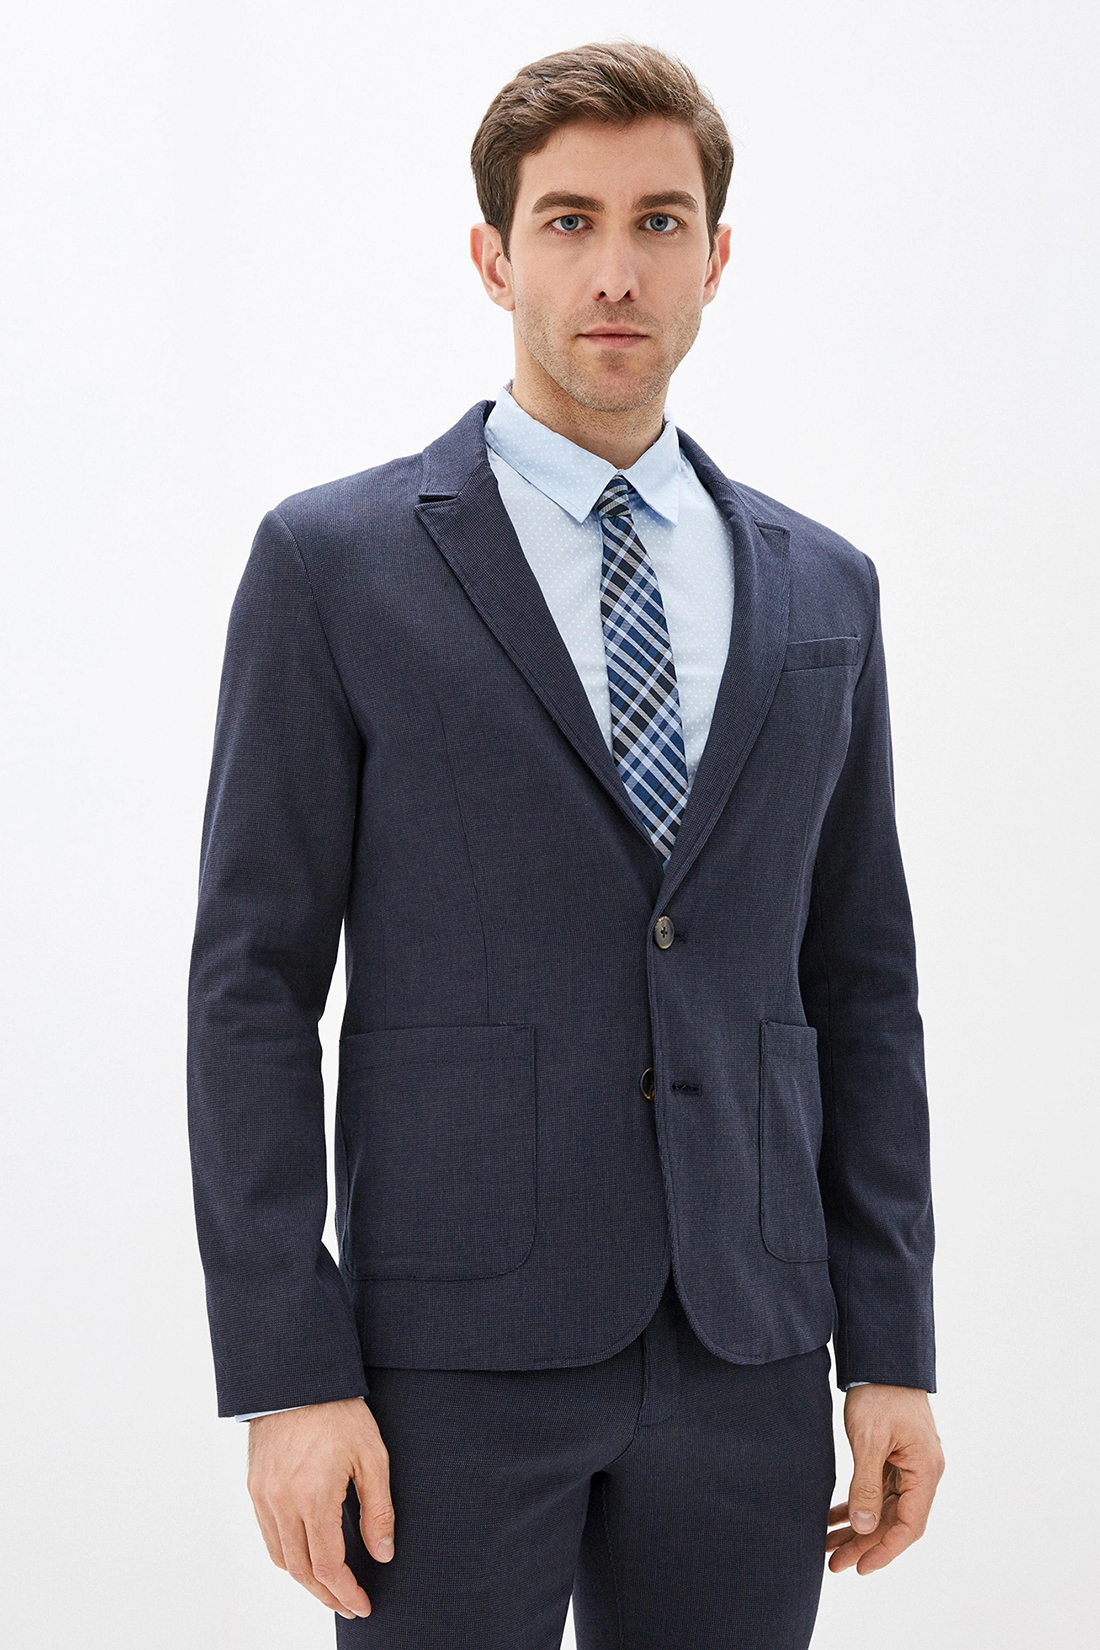 Повседневный пиджак (арт. baon B620002), размер S, цвет синий Повседневный пиджак (арт. baon B620002) - фото 1